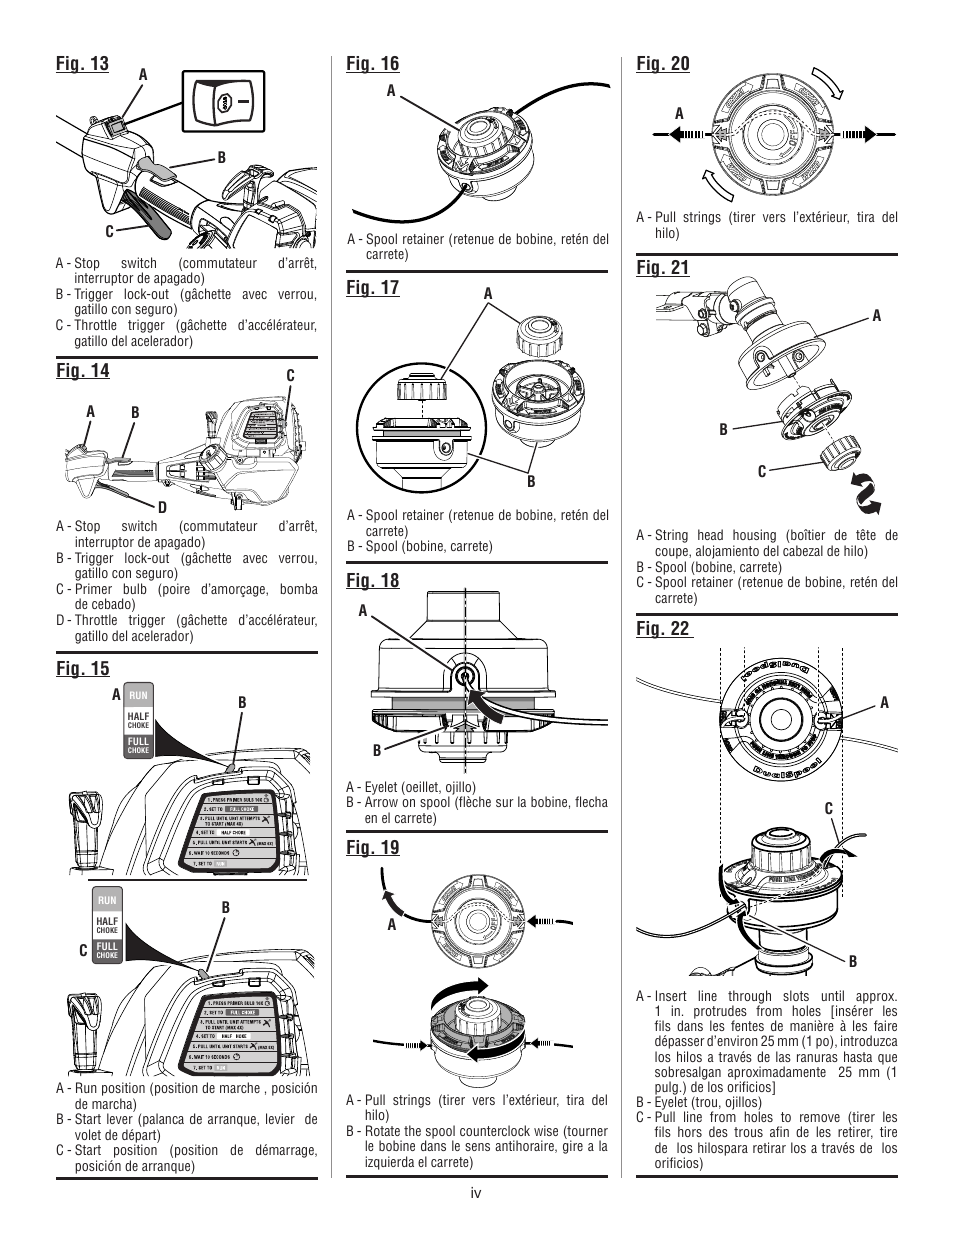 Fig. 14, Fig. 15, Fig. 13 | Ryobi S430 RY34441 User Manual | Page 4 / 56 |  Original mode